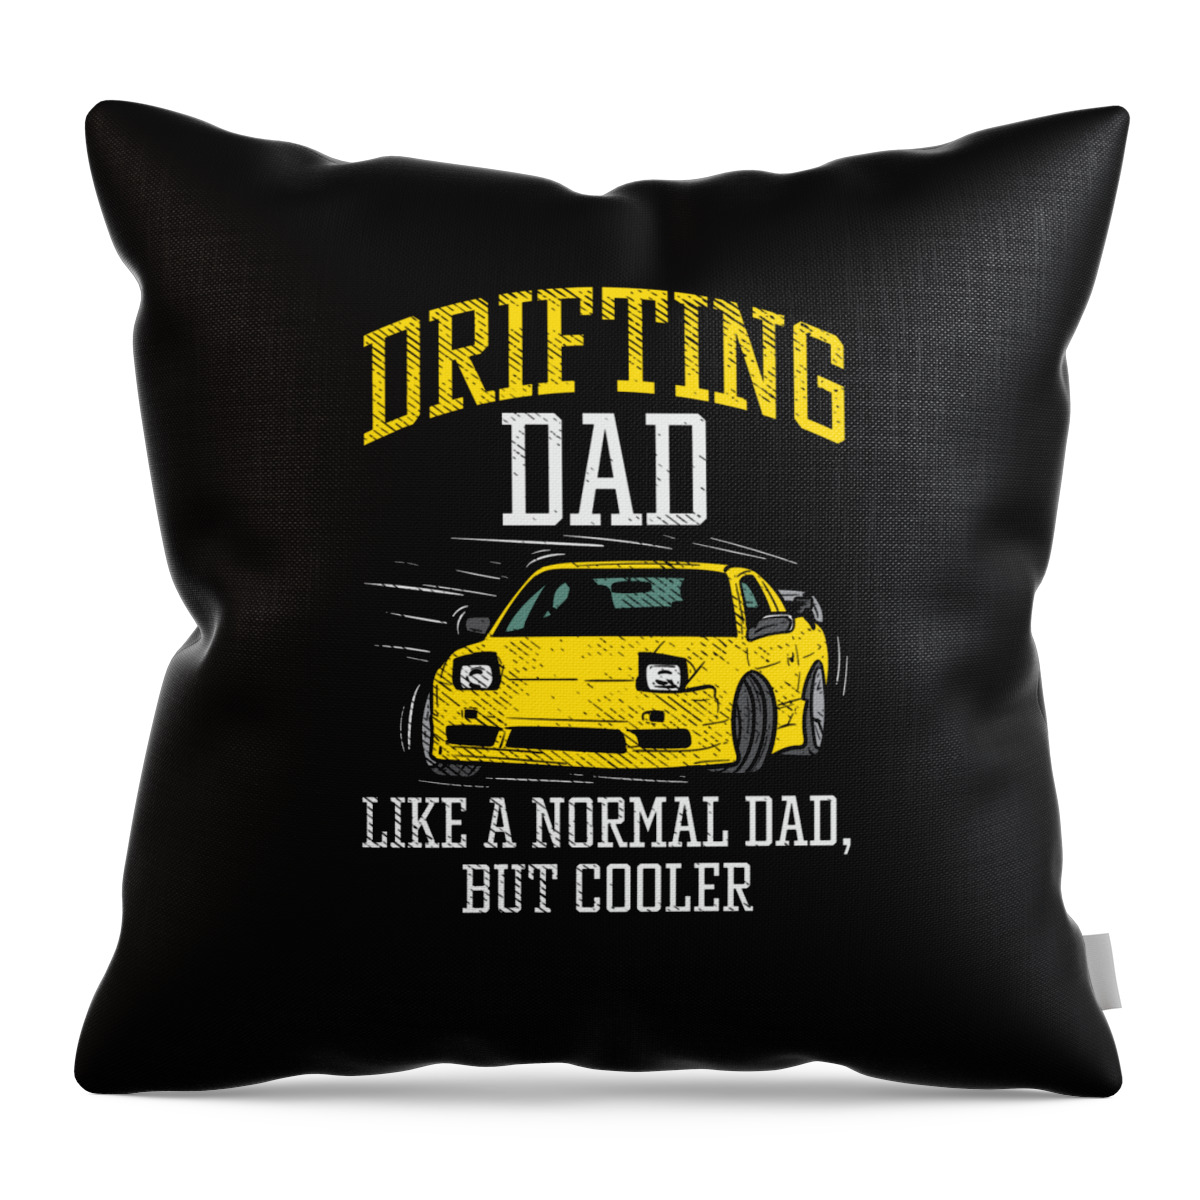 Drifting Throw Pillow featuring the digital art Drifting Dad Drifter Car Racing JDM by Toms Tee Store